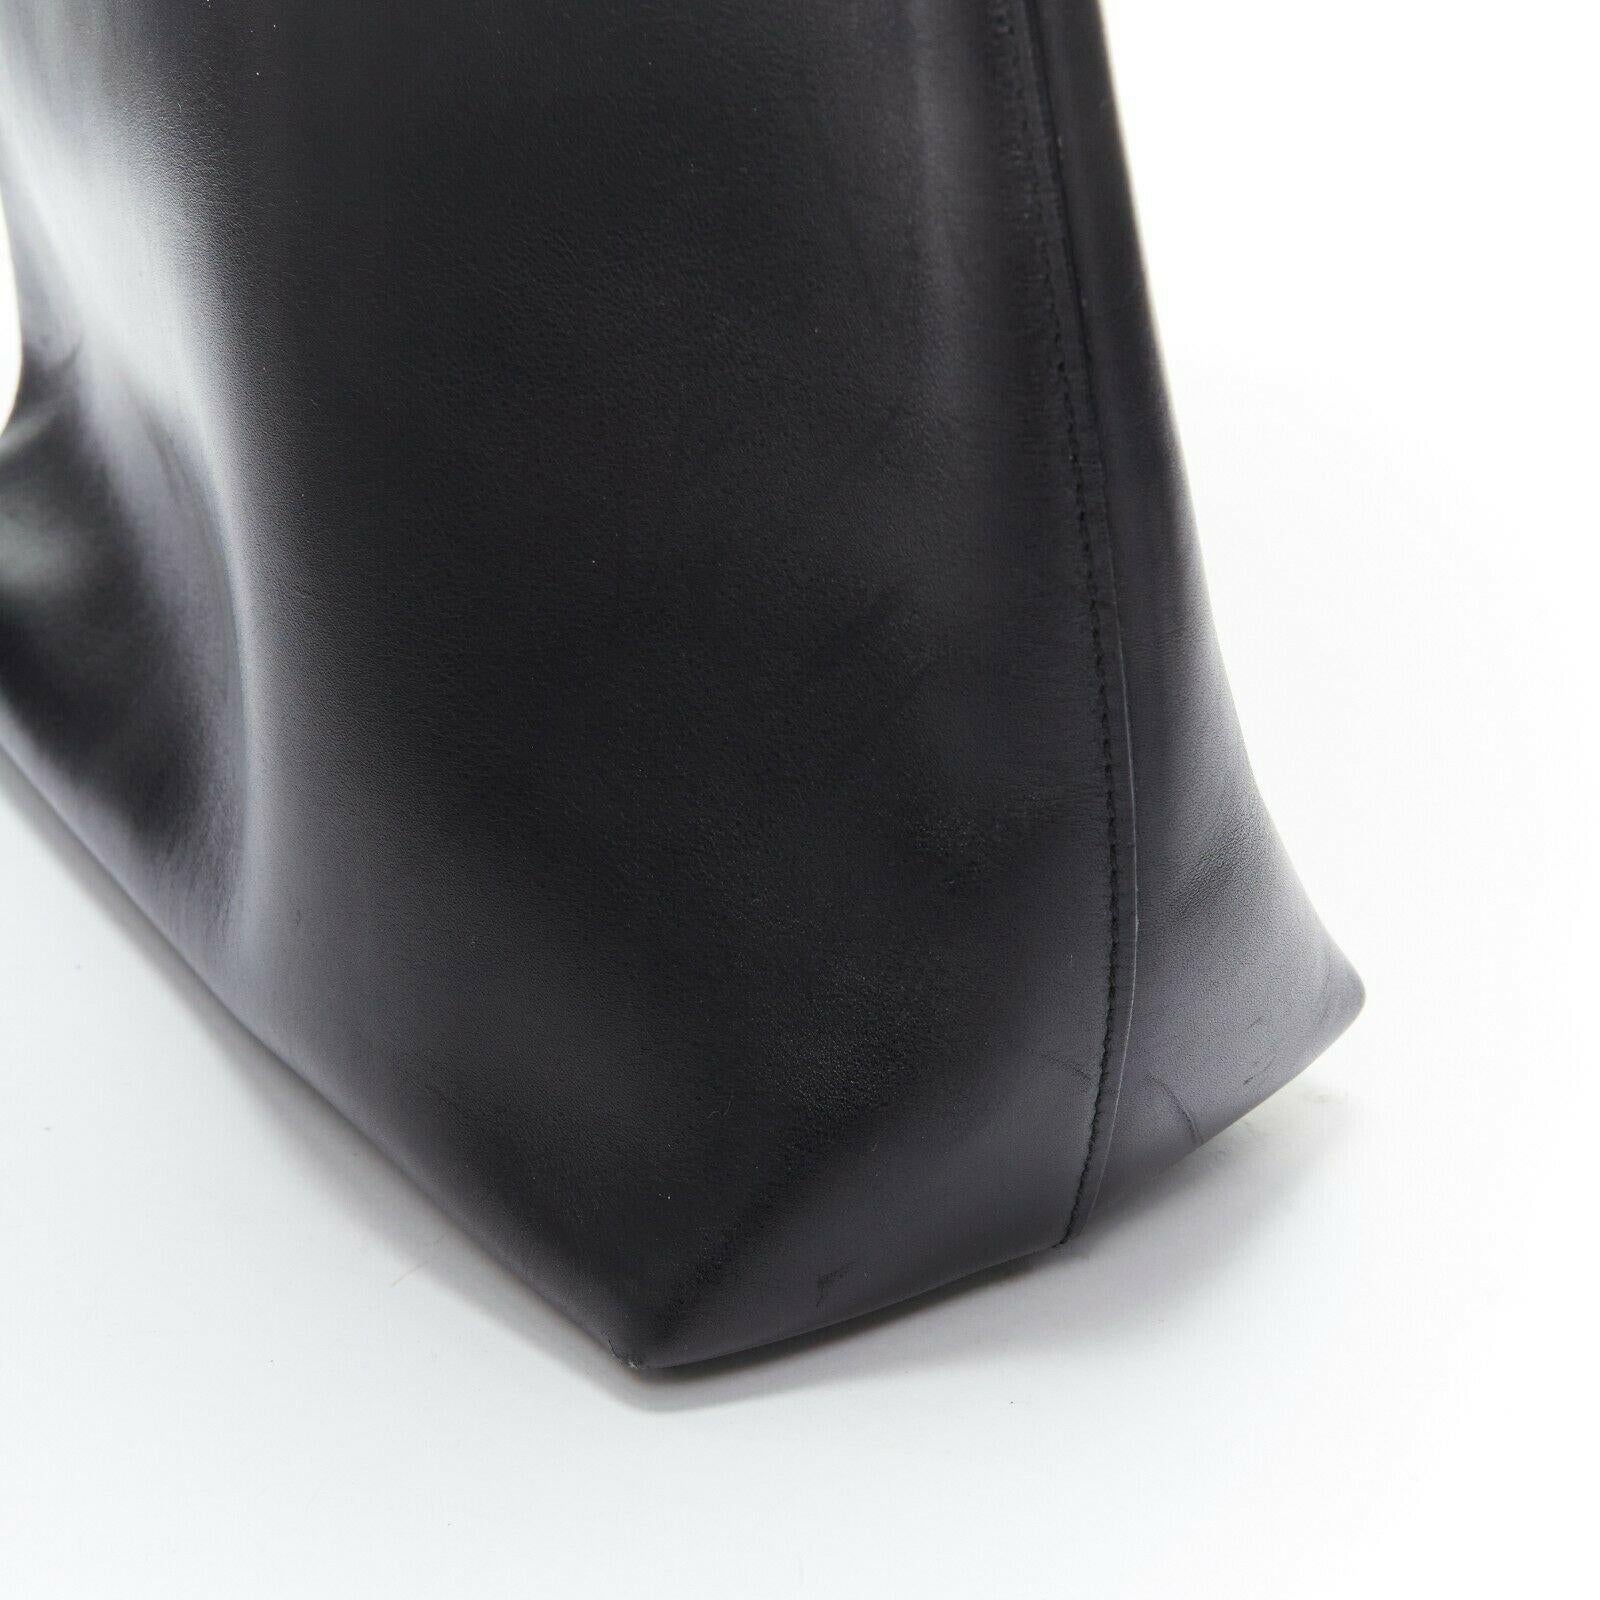 Women's vintage GUCCI black calfskin leather Bamboo handle shoulder hobo tote bag